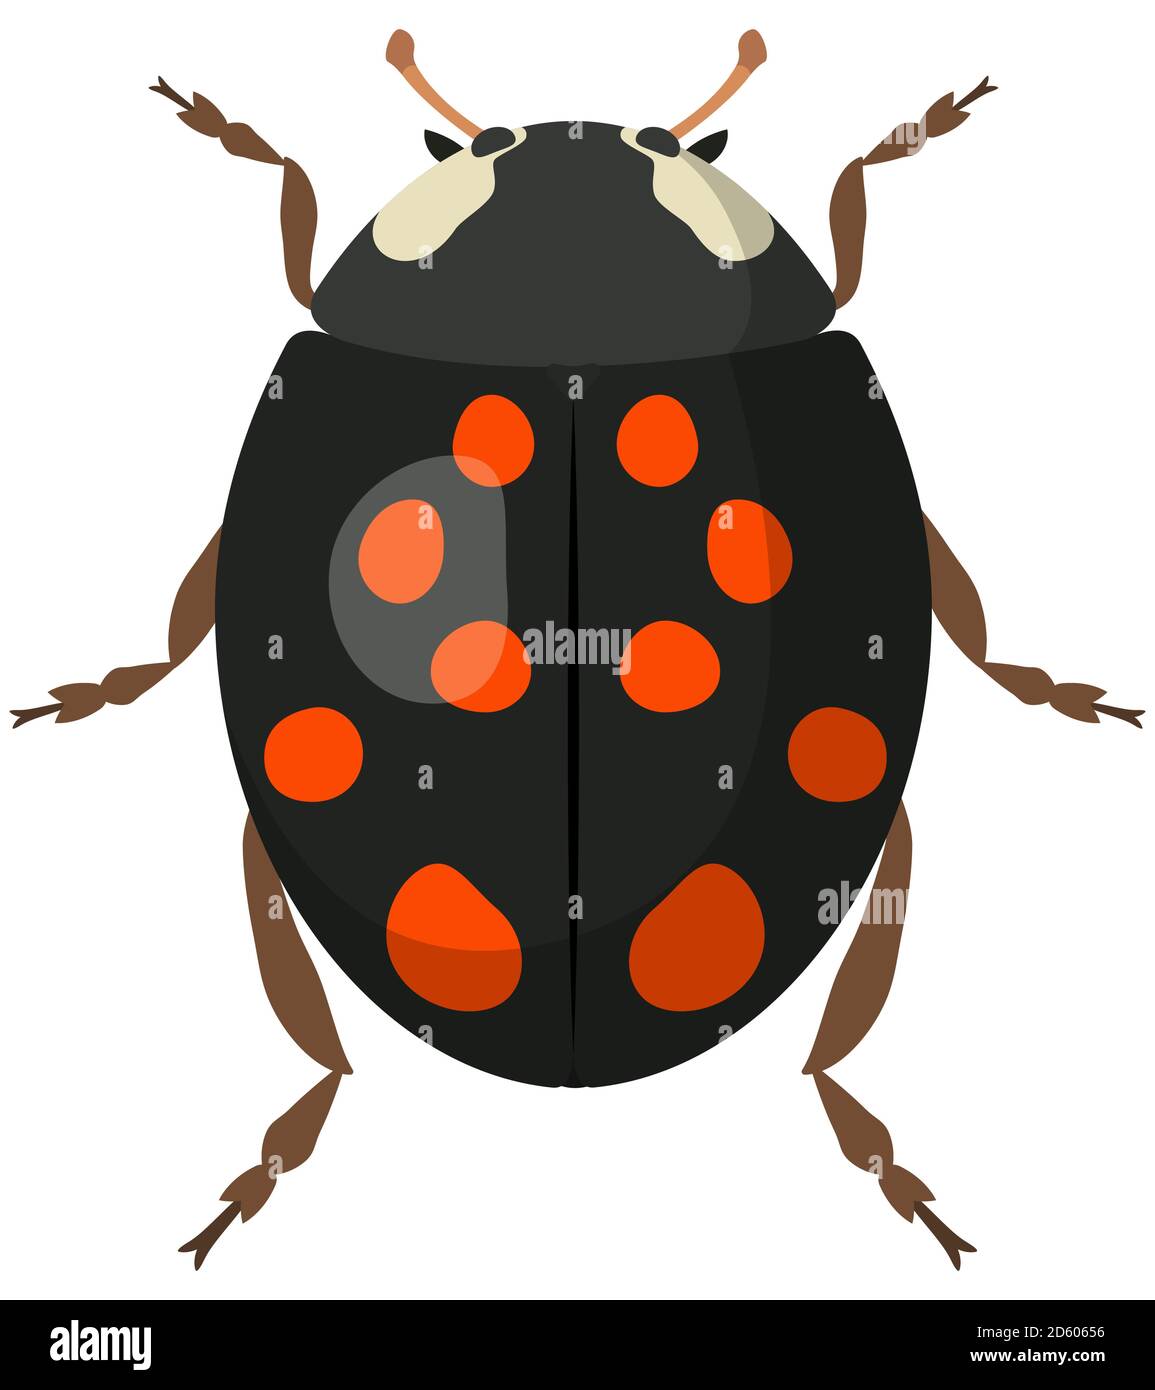 Ladybug negro en estilo de dibujos animados. Insecto aislado en fondo blanco. Ilustración del Vector